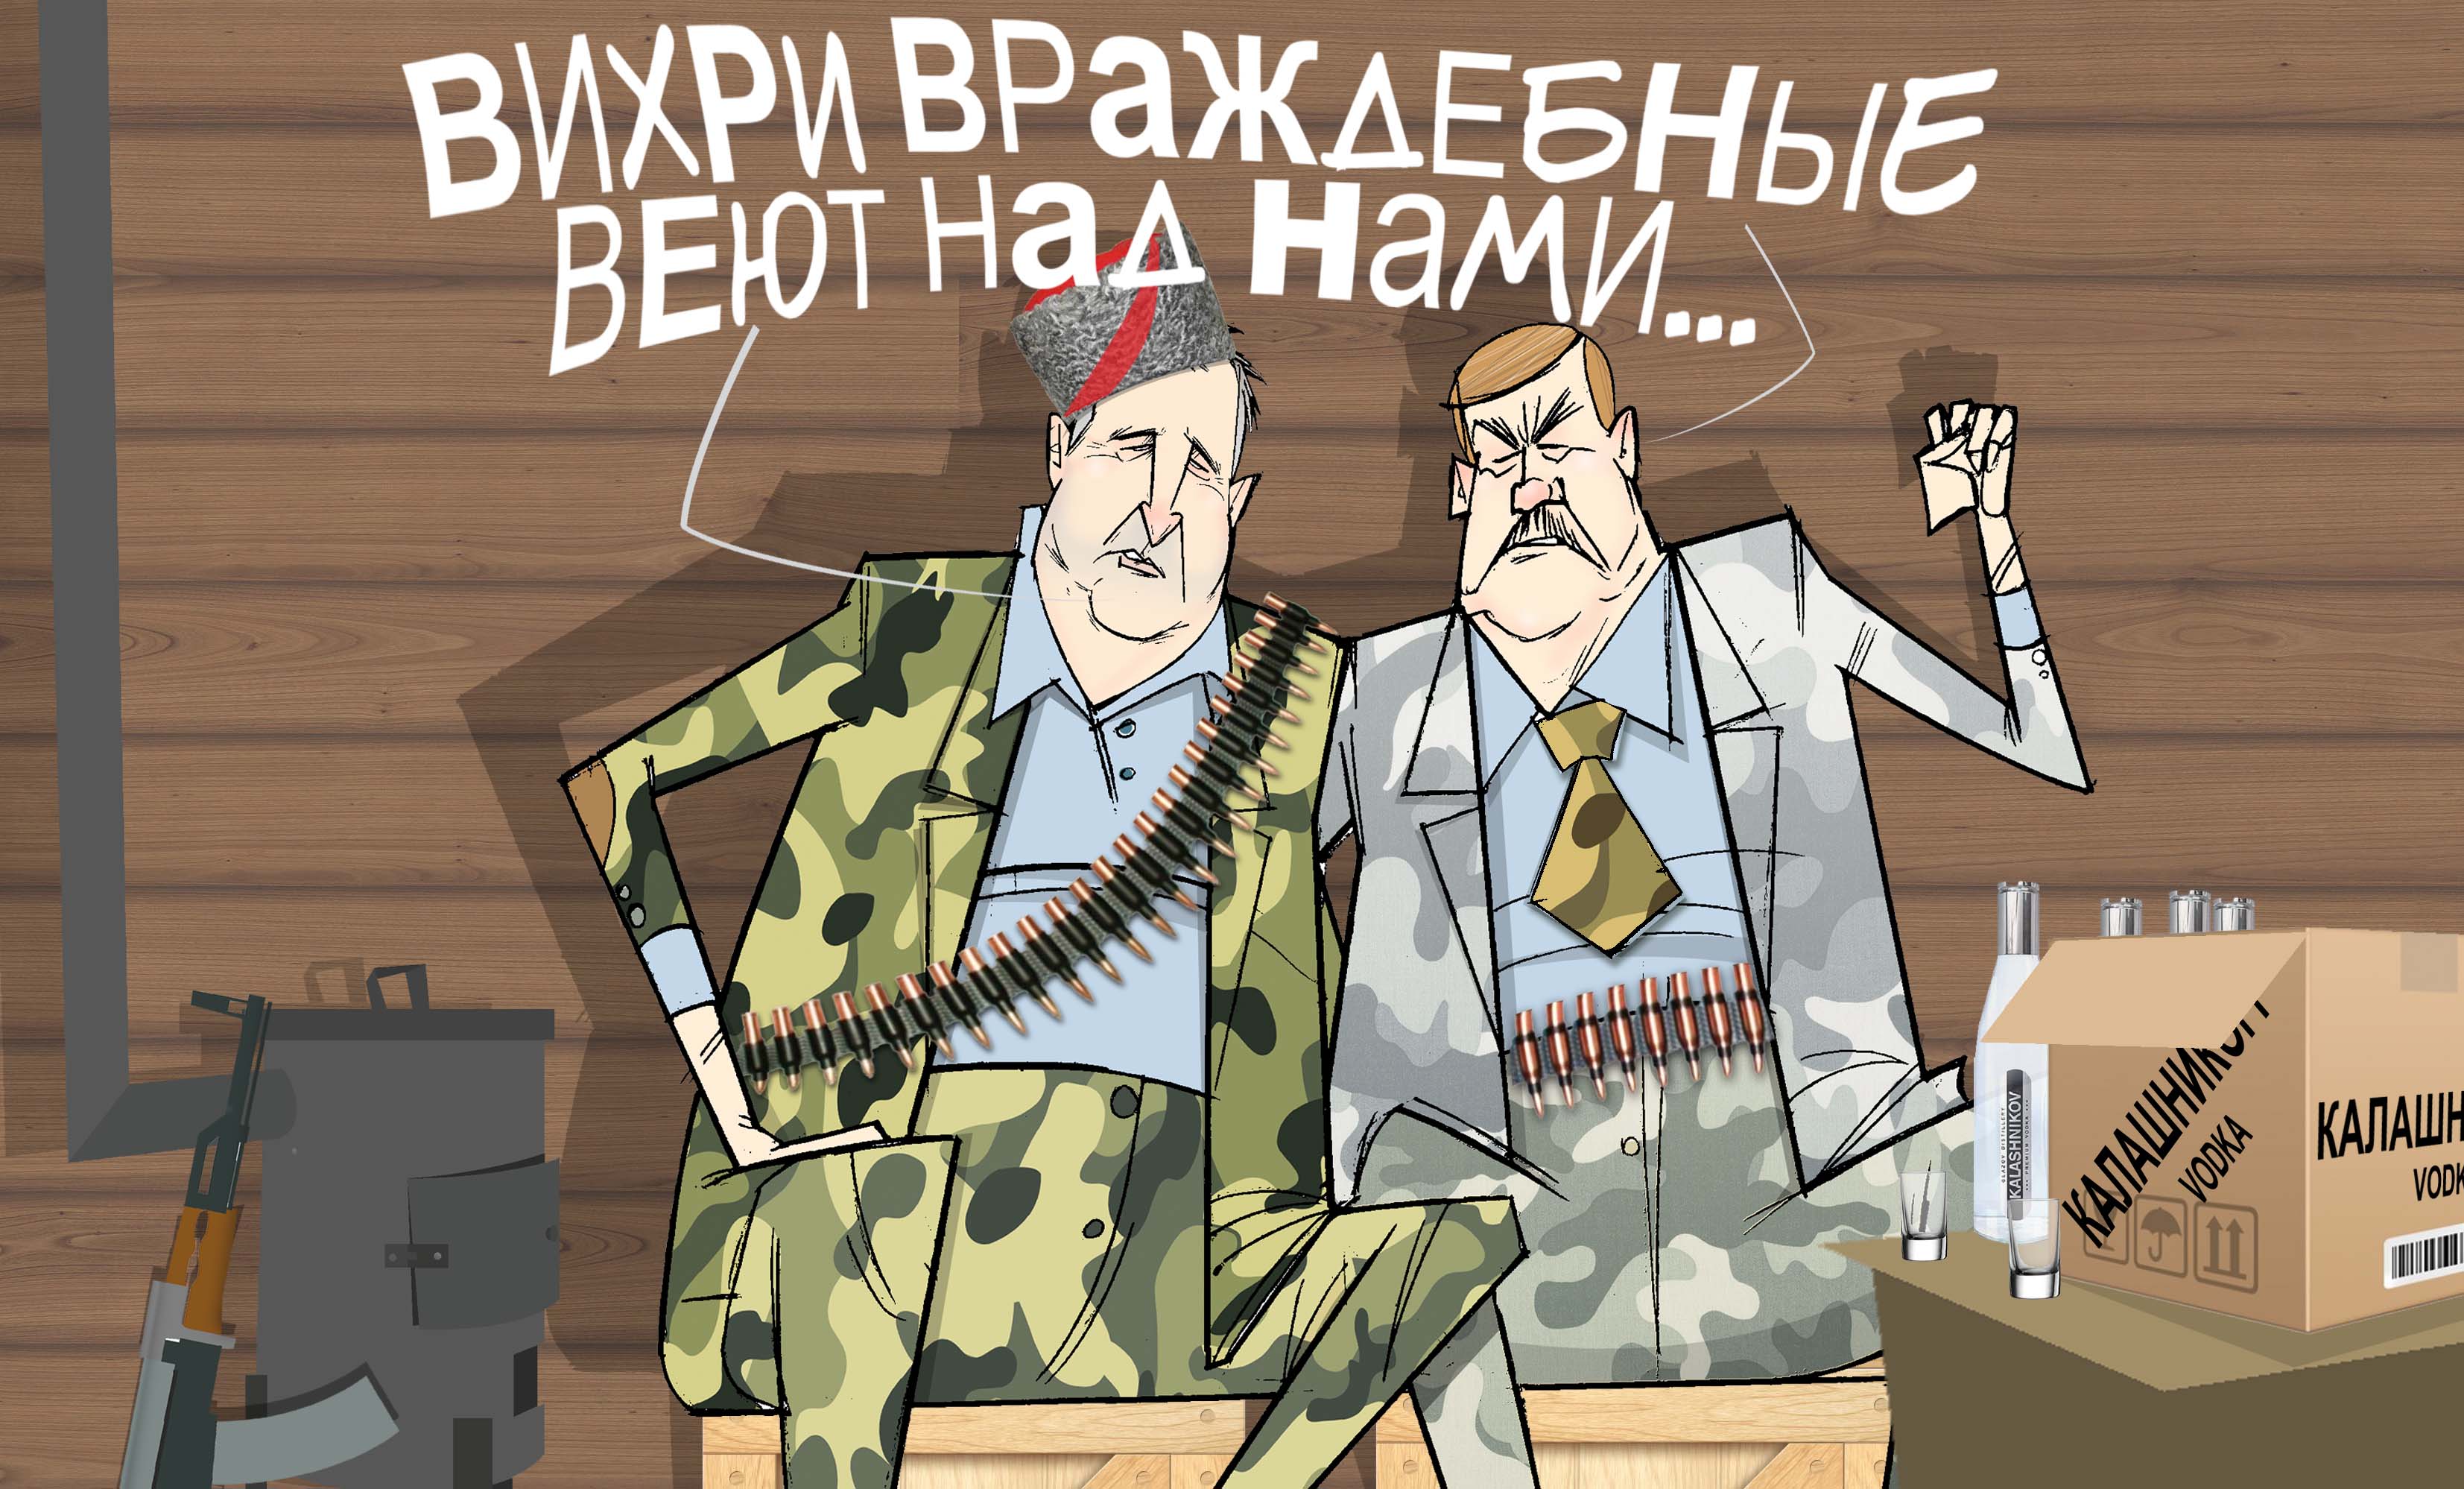 Вихри враждебные. #Рогозин #Бусыгин #КонцернКалашников © Газета "День" 2013